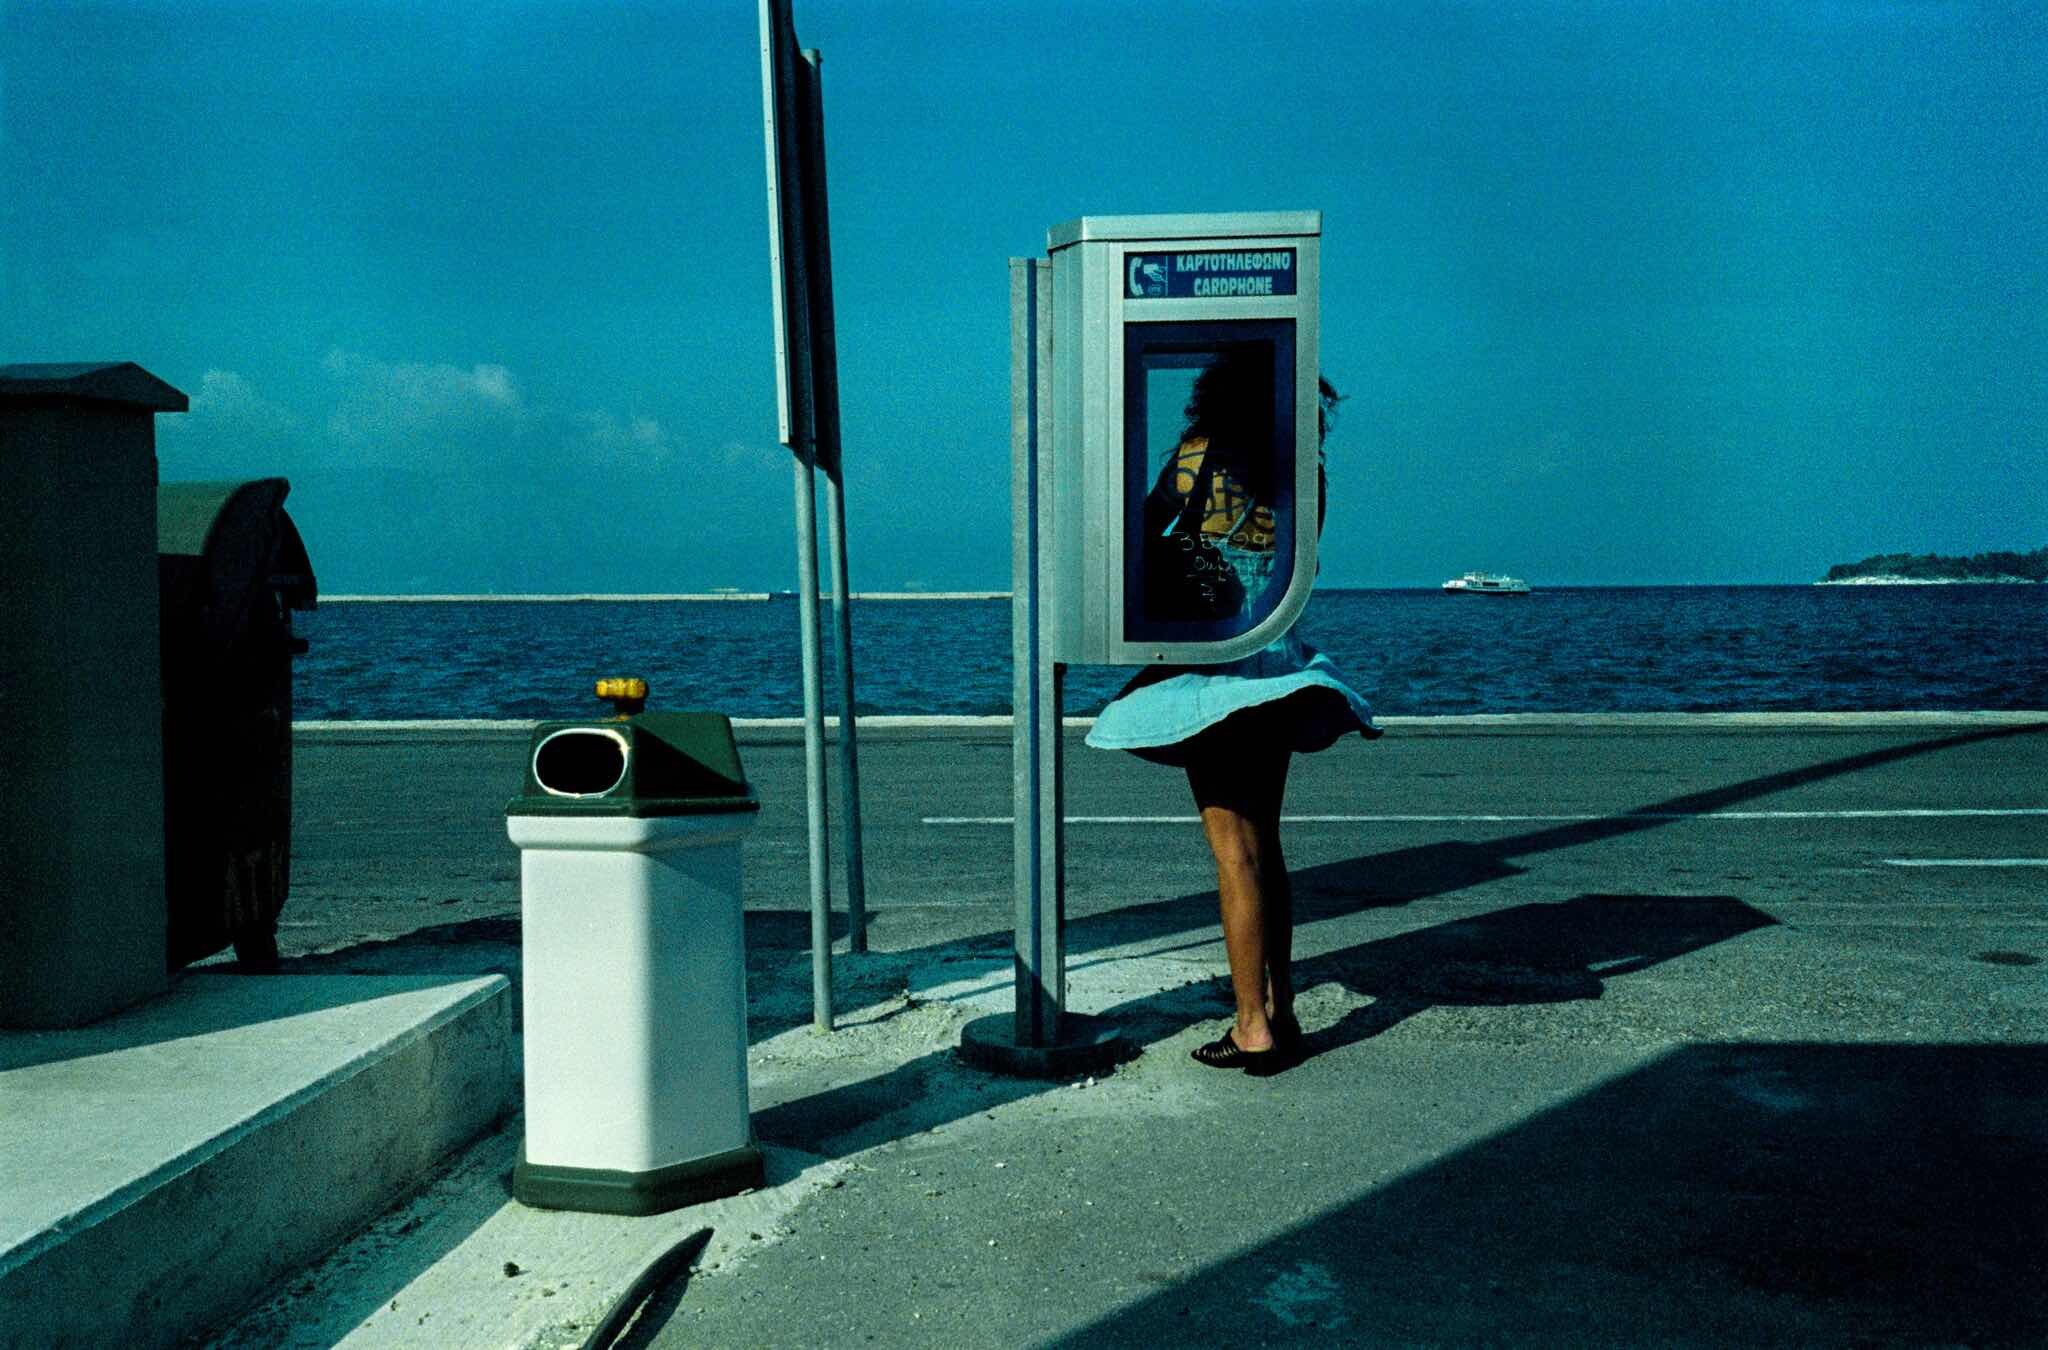 Проект Ежедневный отчет, Корфу, Греция, телефонная будка на берегу моря, октябрь, 1999 год. Фотограф Франк Хорват